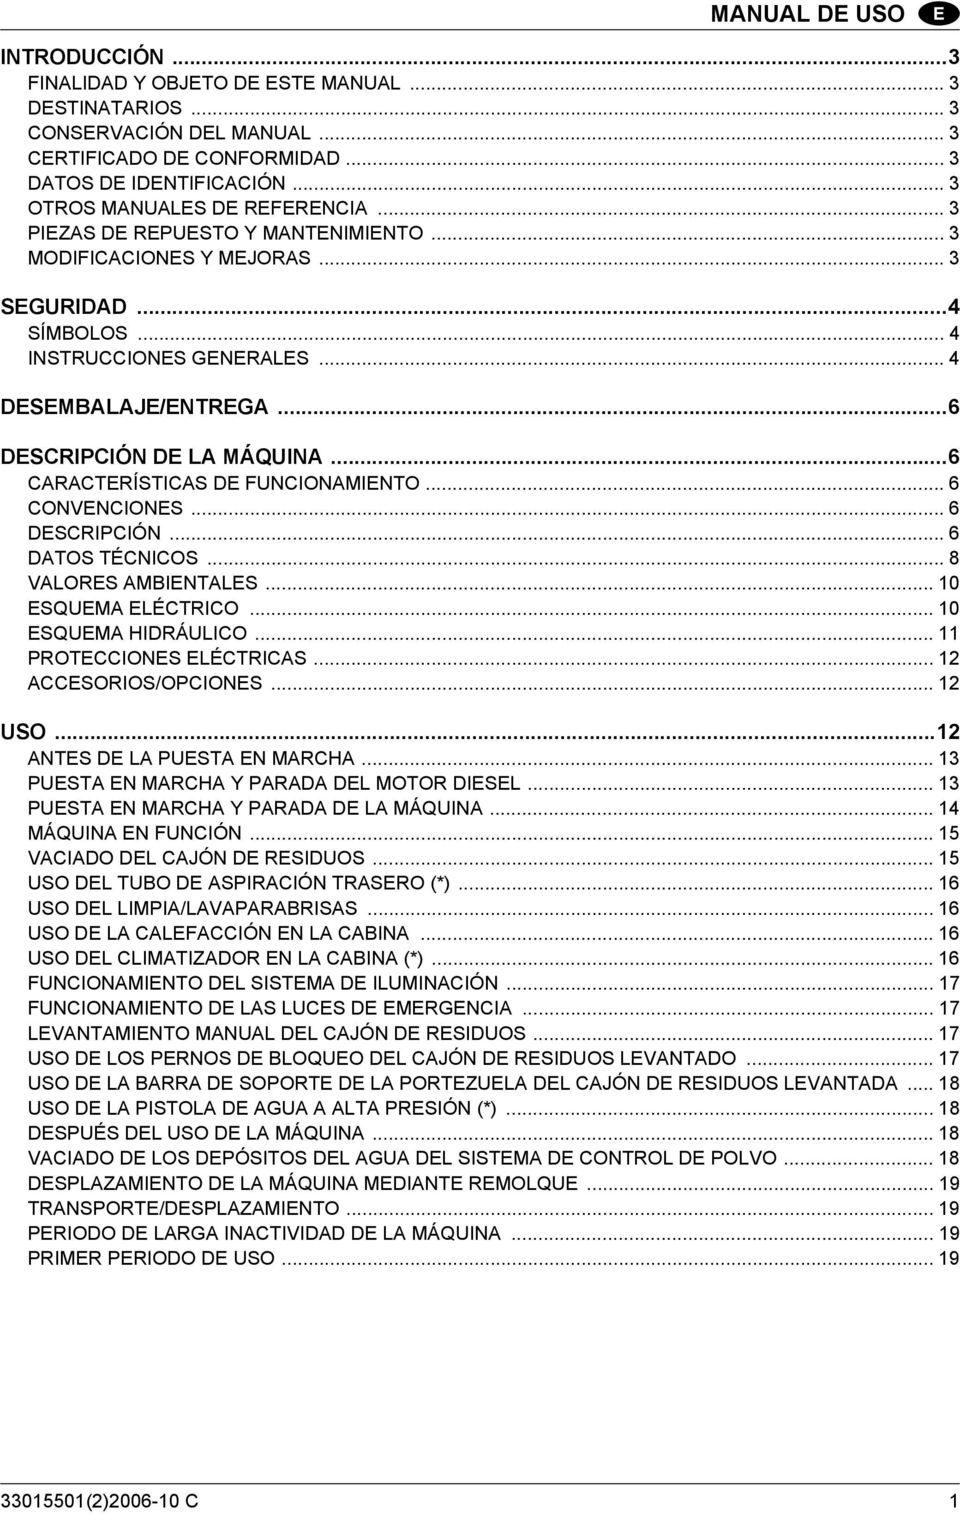 ..6 DESCRIPCIÓN DE LA MÁQUINA...6 CARACTERÍSTICAS DE FUNCIONAMIENTO... 6 CONVENCIONES... 6 DESCRIPCIÓN... 6 DATOS TÉCNICOS... 8 VALORES AMBIENTALES... 10 ESQUEMA ELÉCTRICO... 10 ESQUEMA HIDRÁULICO.